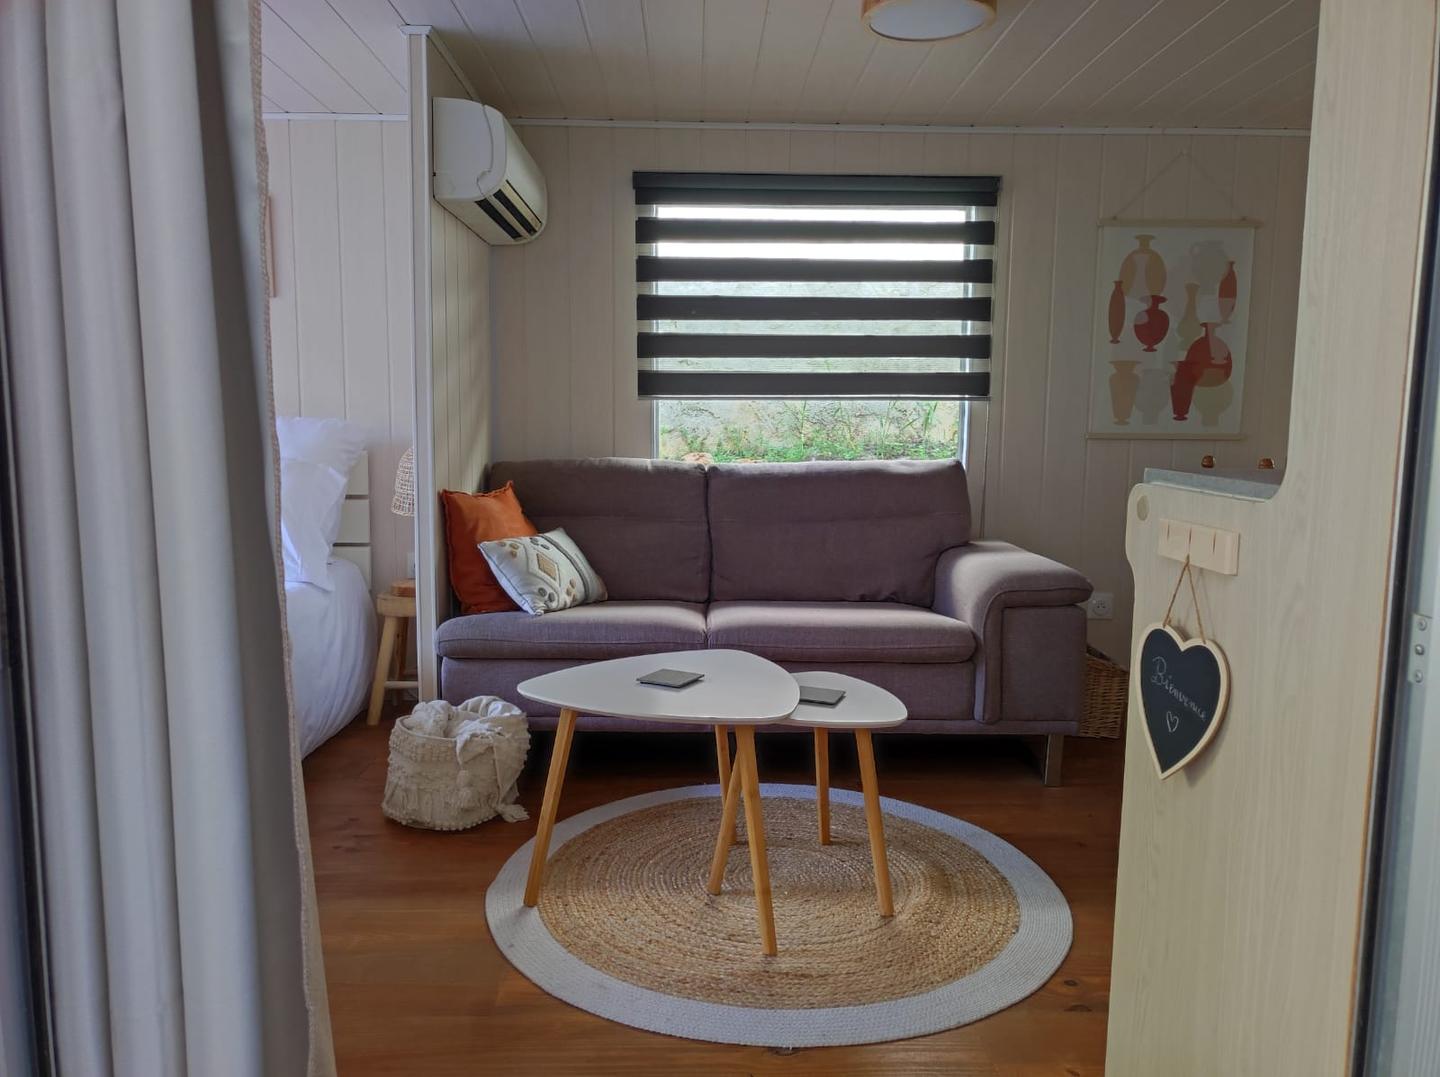 Hôte GreenGo: "La Casetta" Charmand bungalow tout confort - Image 4